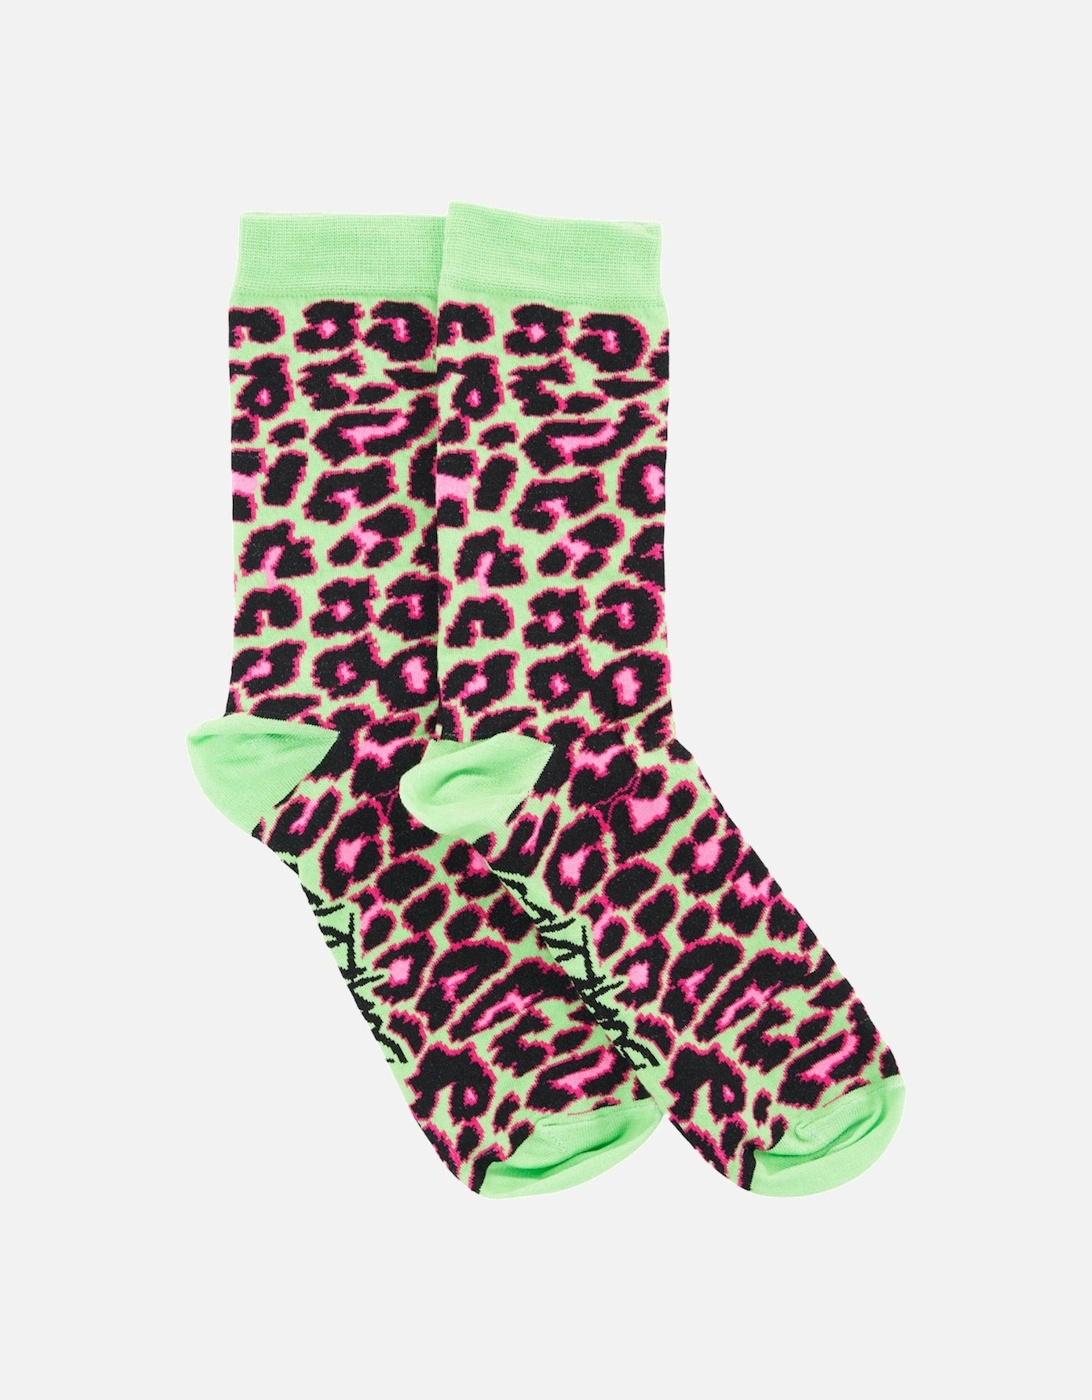 Tropical Cheetah Socks, 3 of 2